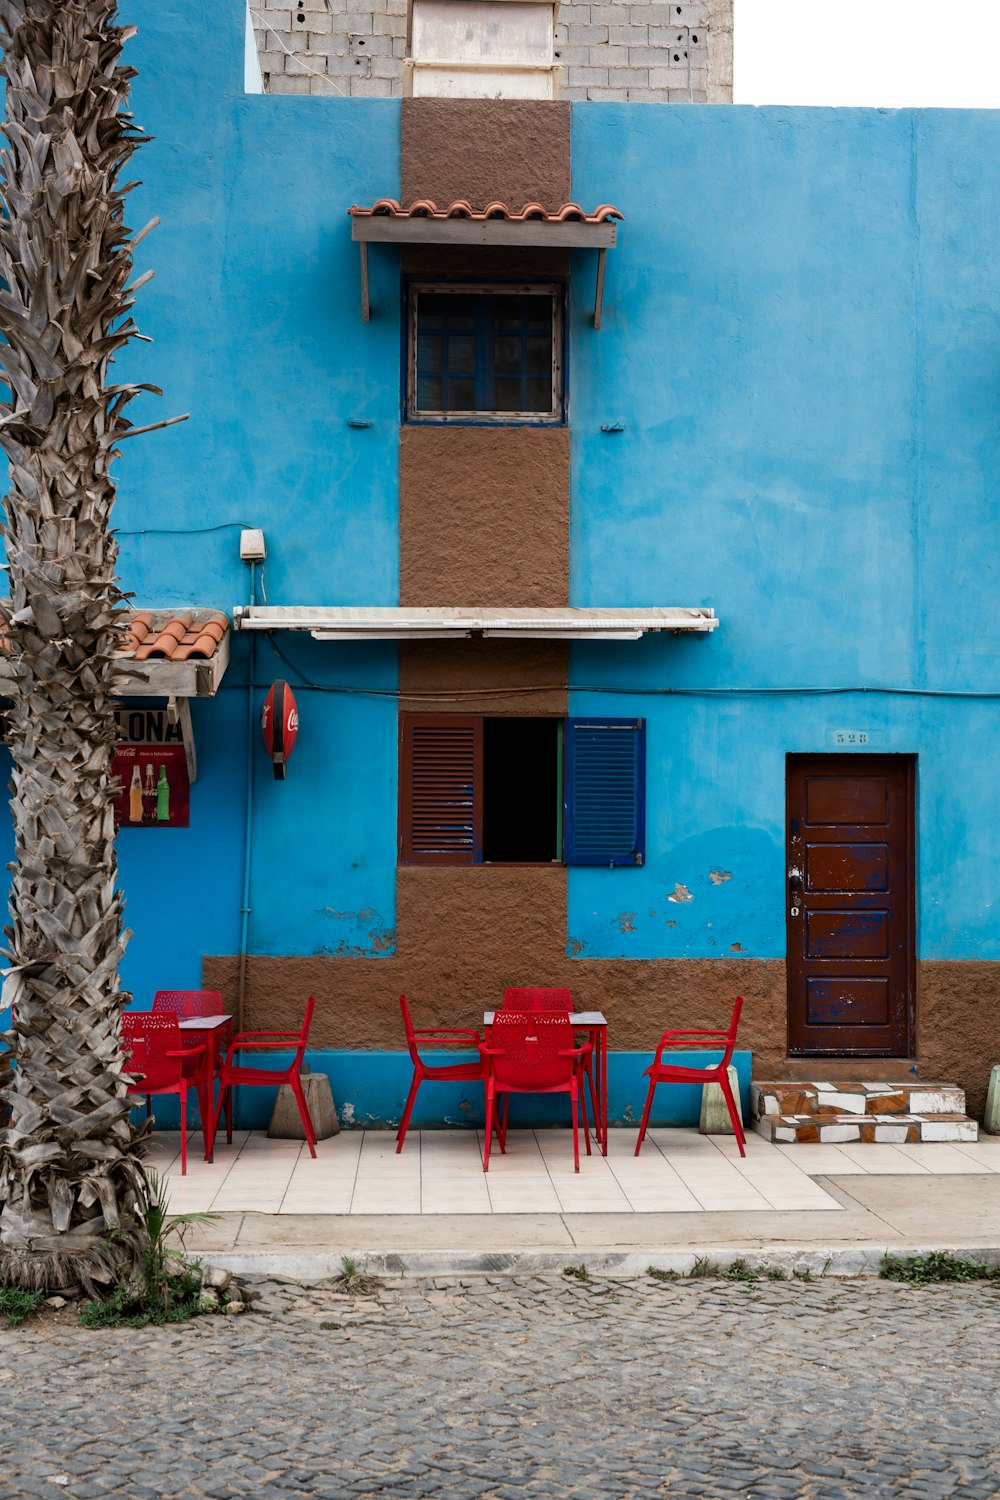 cadeiras e mesas de plástico vermelho perto do edifício de concreto azul